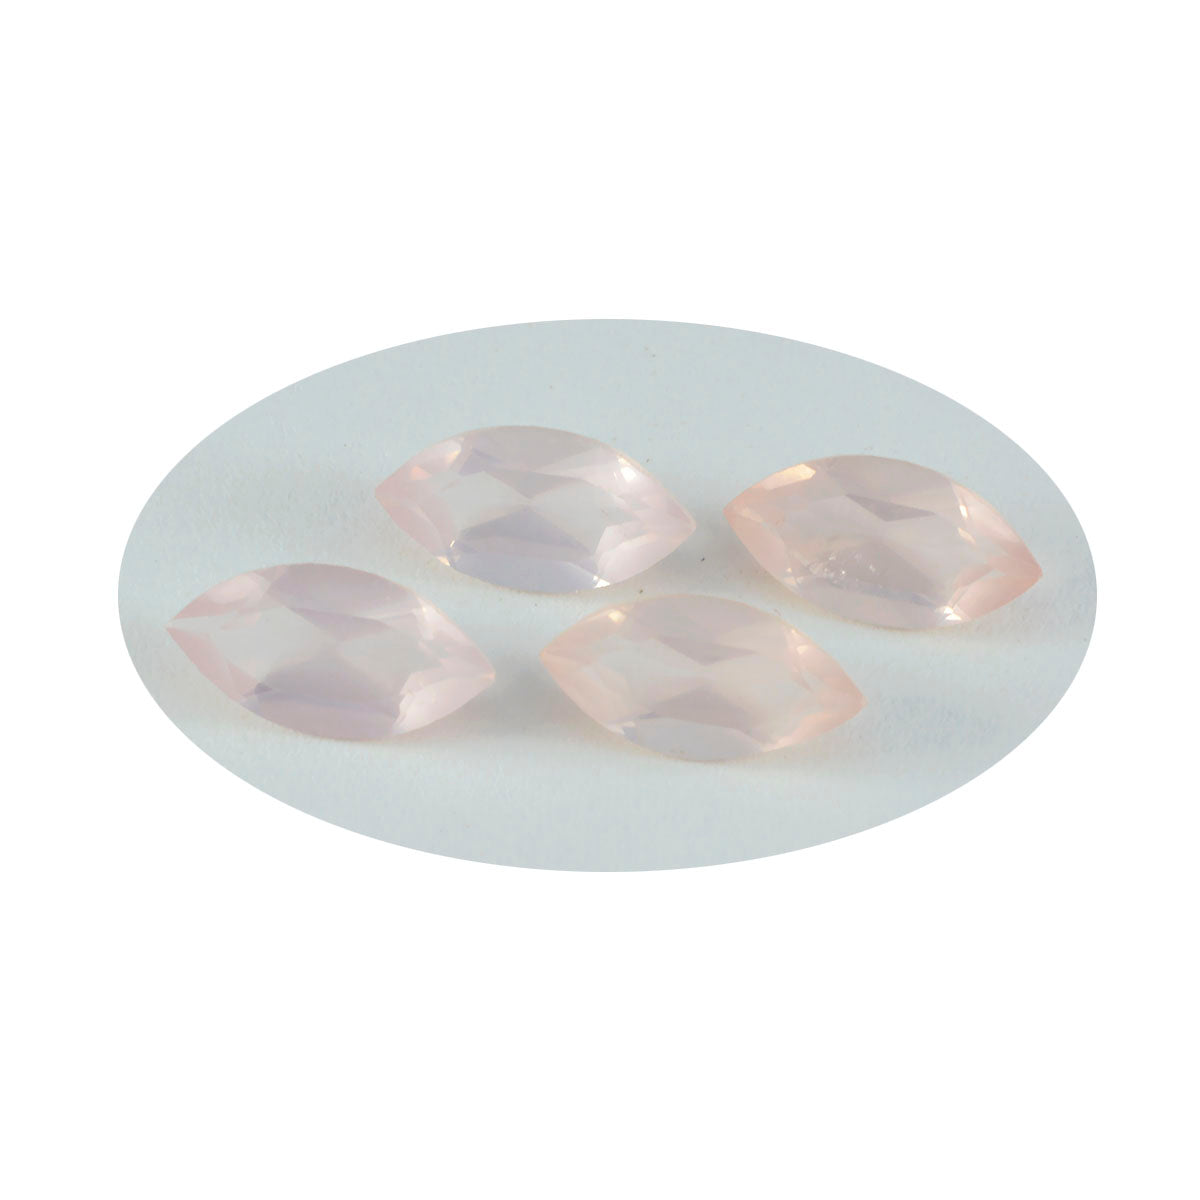 riyogems 1 шт. розовый кварц ограненный 9x18 мм драгоценный камень привлекательного качества в форме маркизы